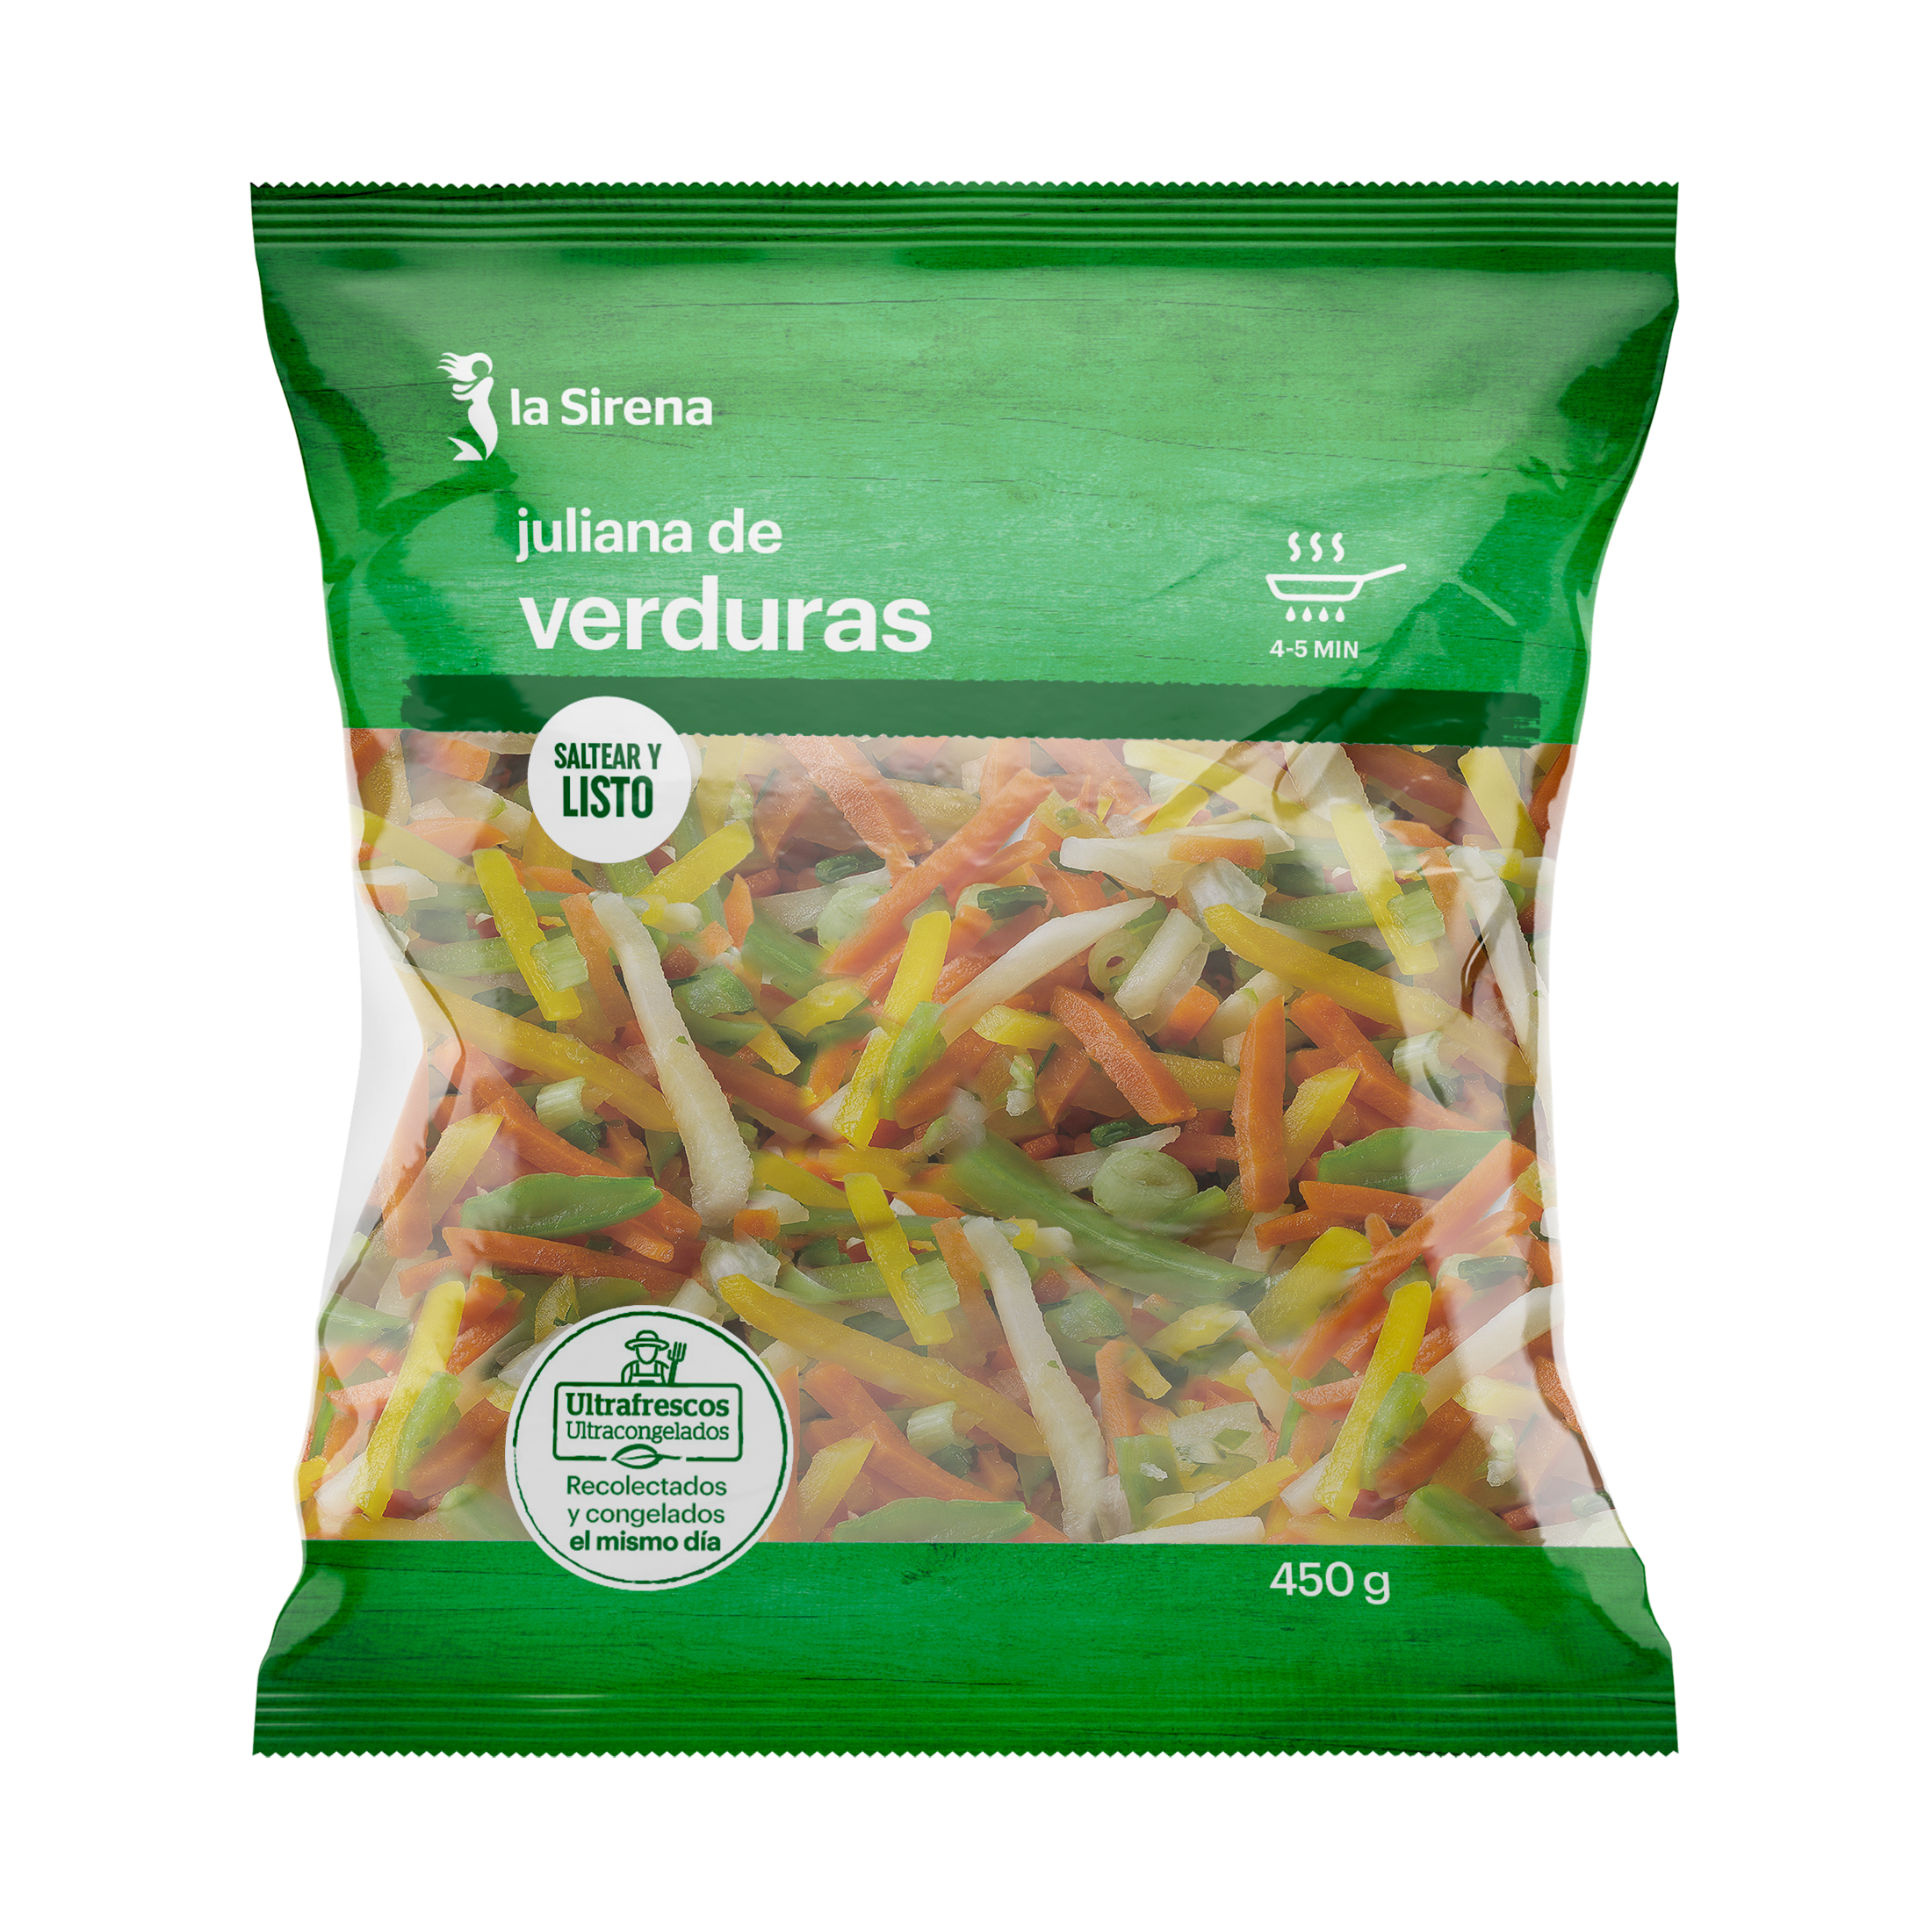 Comprar Juliana de verduras online en la Sirena